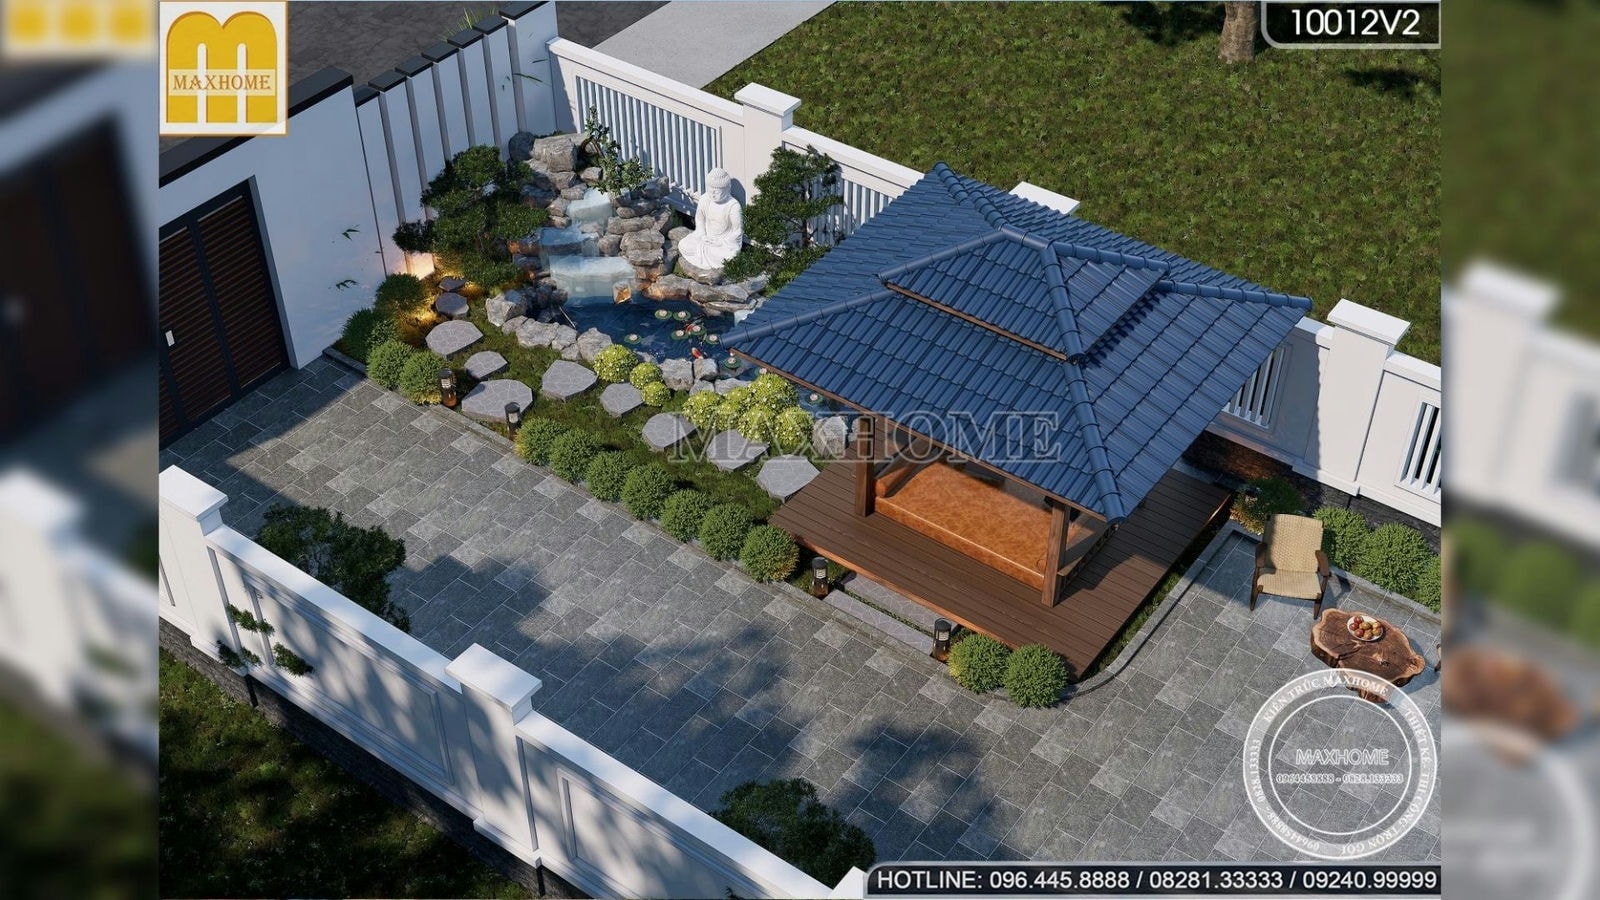 1,2 tỷ trọn gói nhà 2 tầng mái Nhật hiện đại đẹp nhất 2023 của Maxhome I MH01527